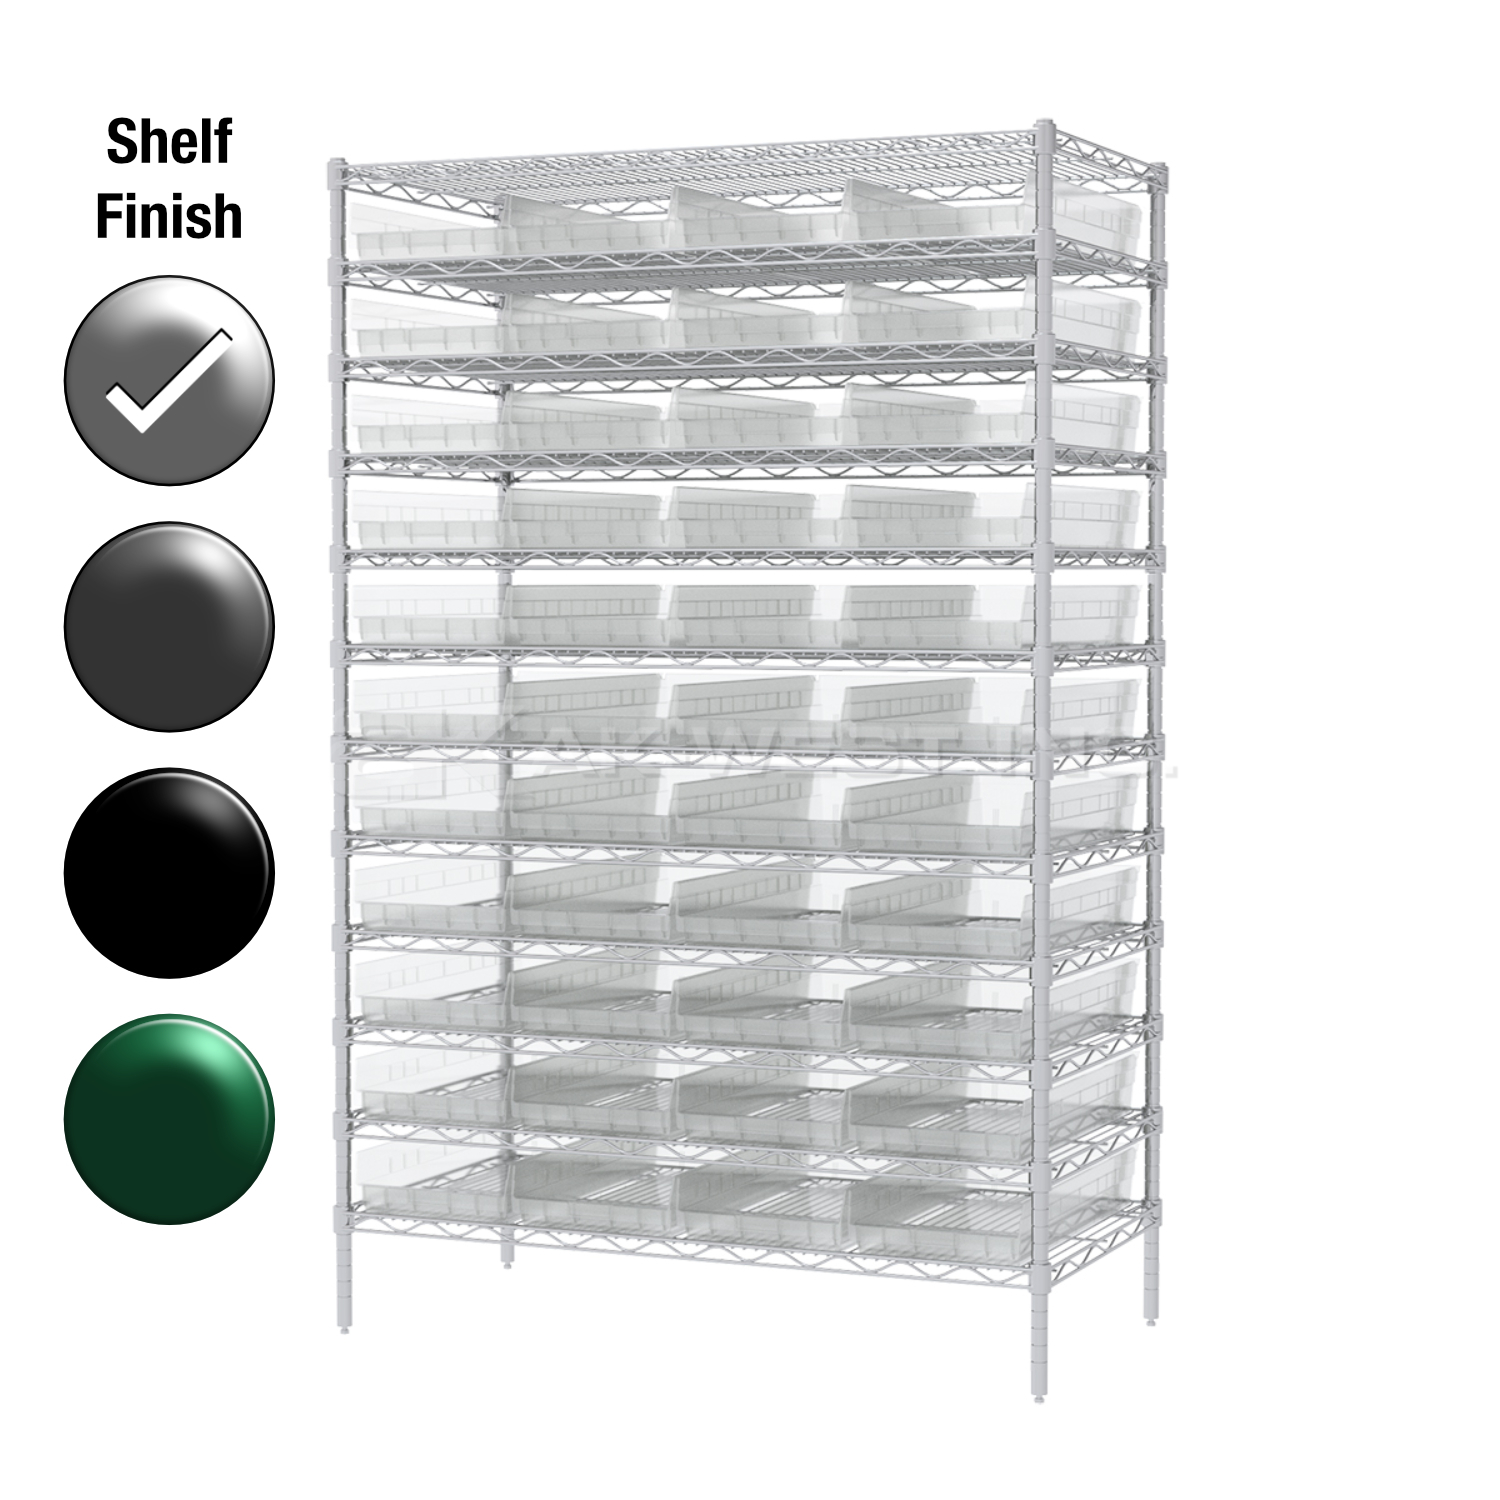 12"D x 48"W x 74"H Chrome Shelf w/ (12) Shelves and (44) 30170s